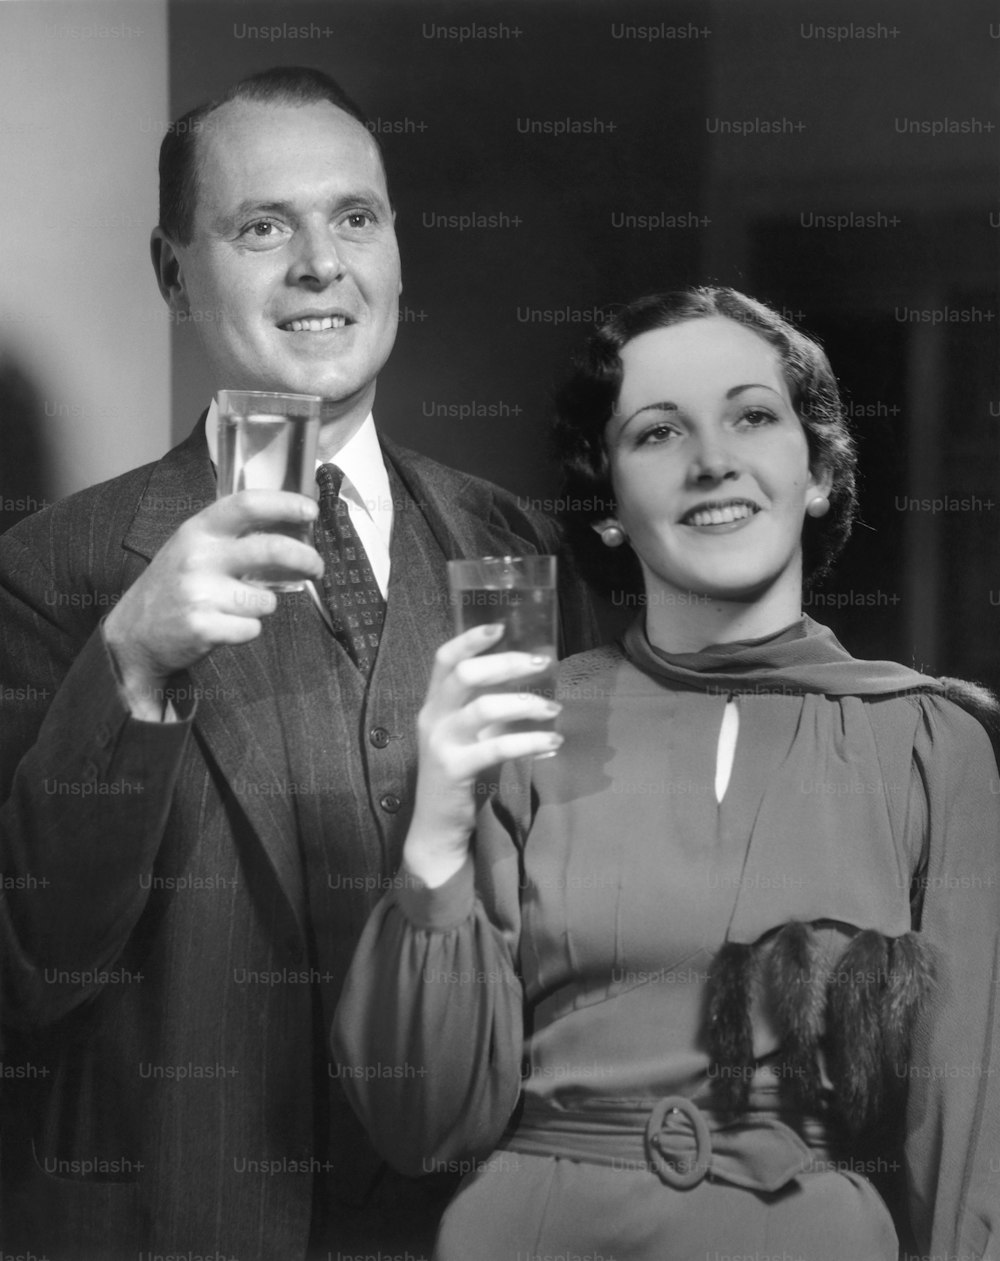 VEREINIGTE STAATEN - CIRCA 1950er Jahre: Porträt eines Paares mit Getränken.